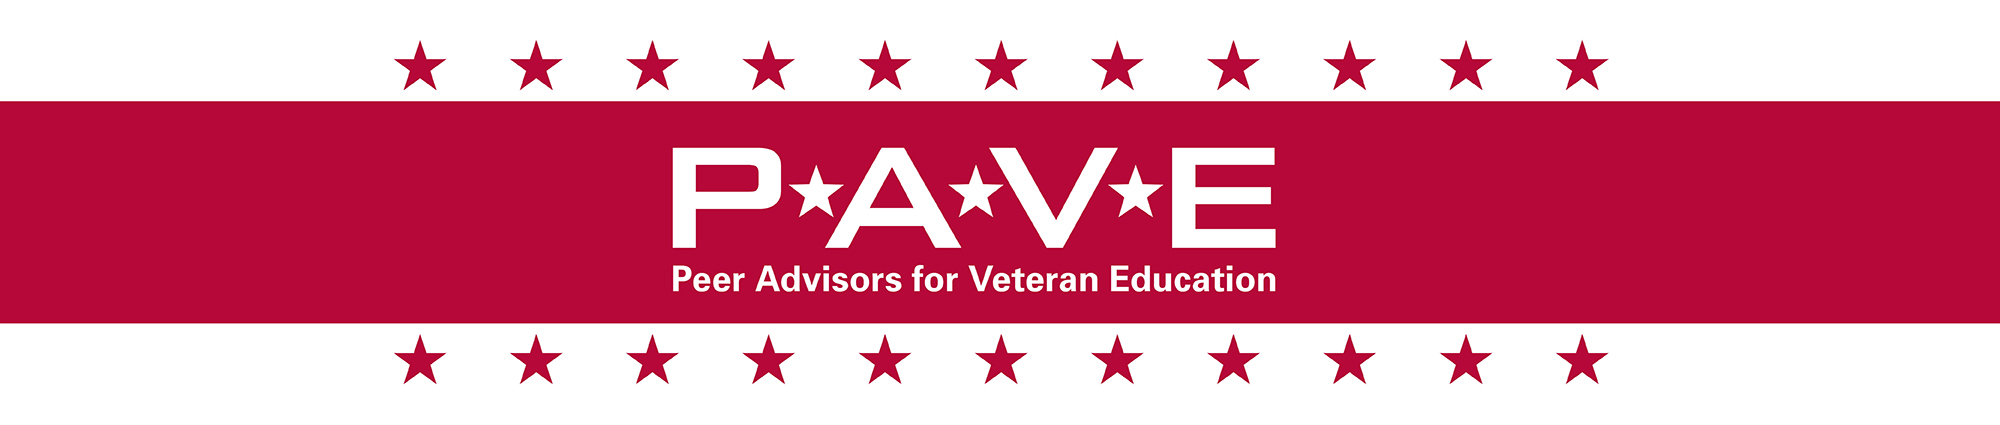 PAVE Peer Advisors for Veteran Education